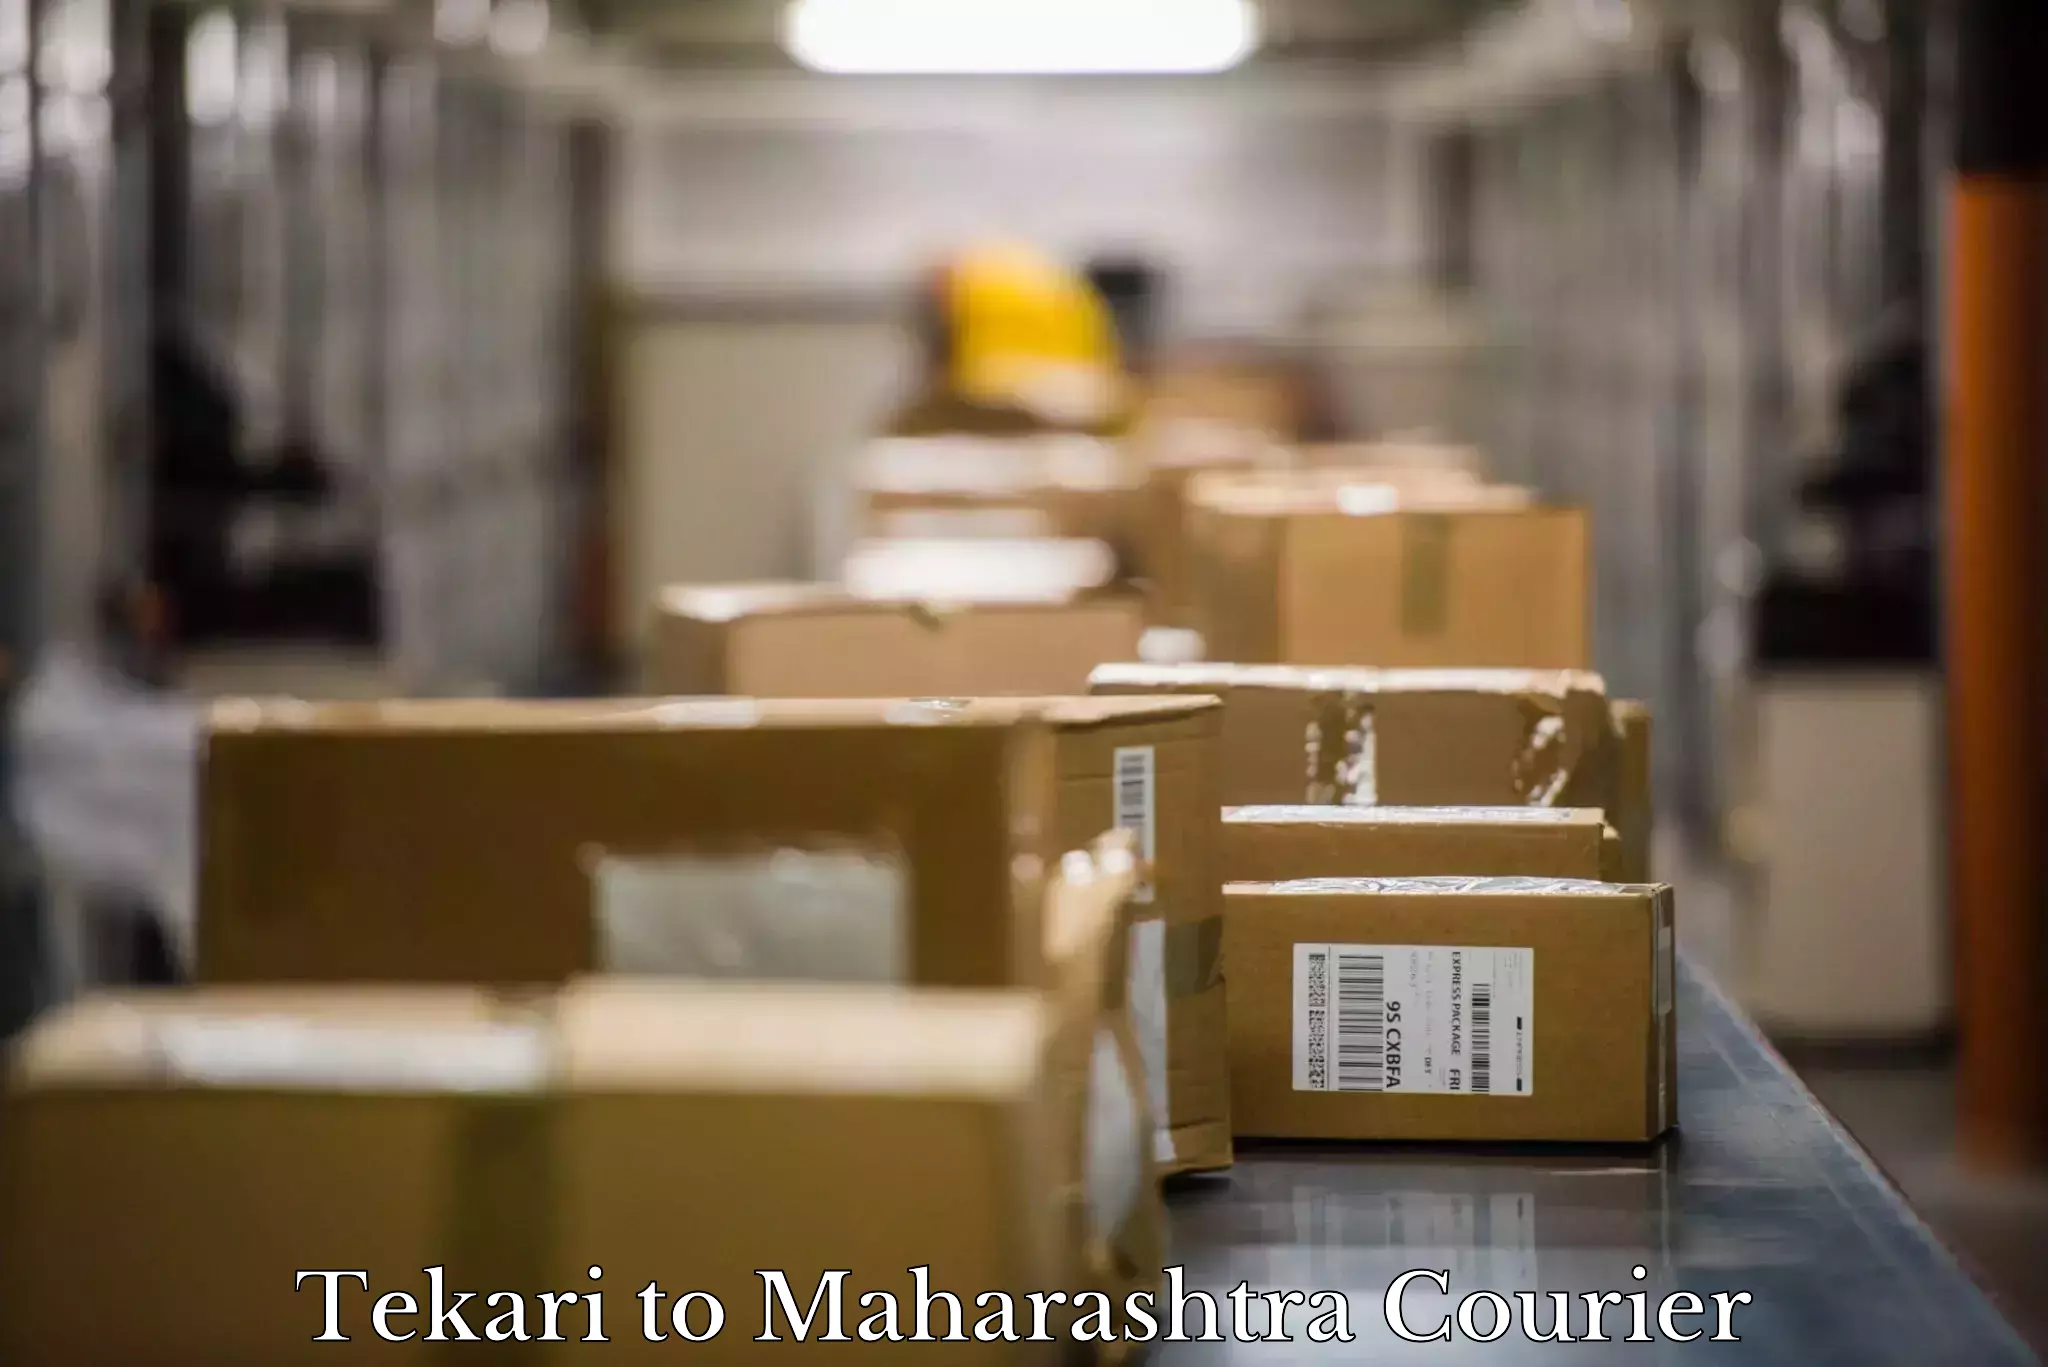 Furniture transport solutions Tekari to Maharashtra